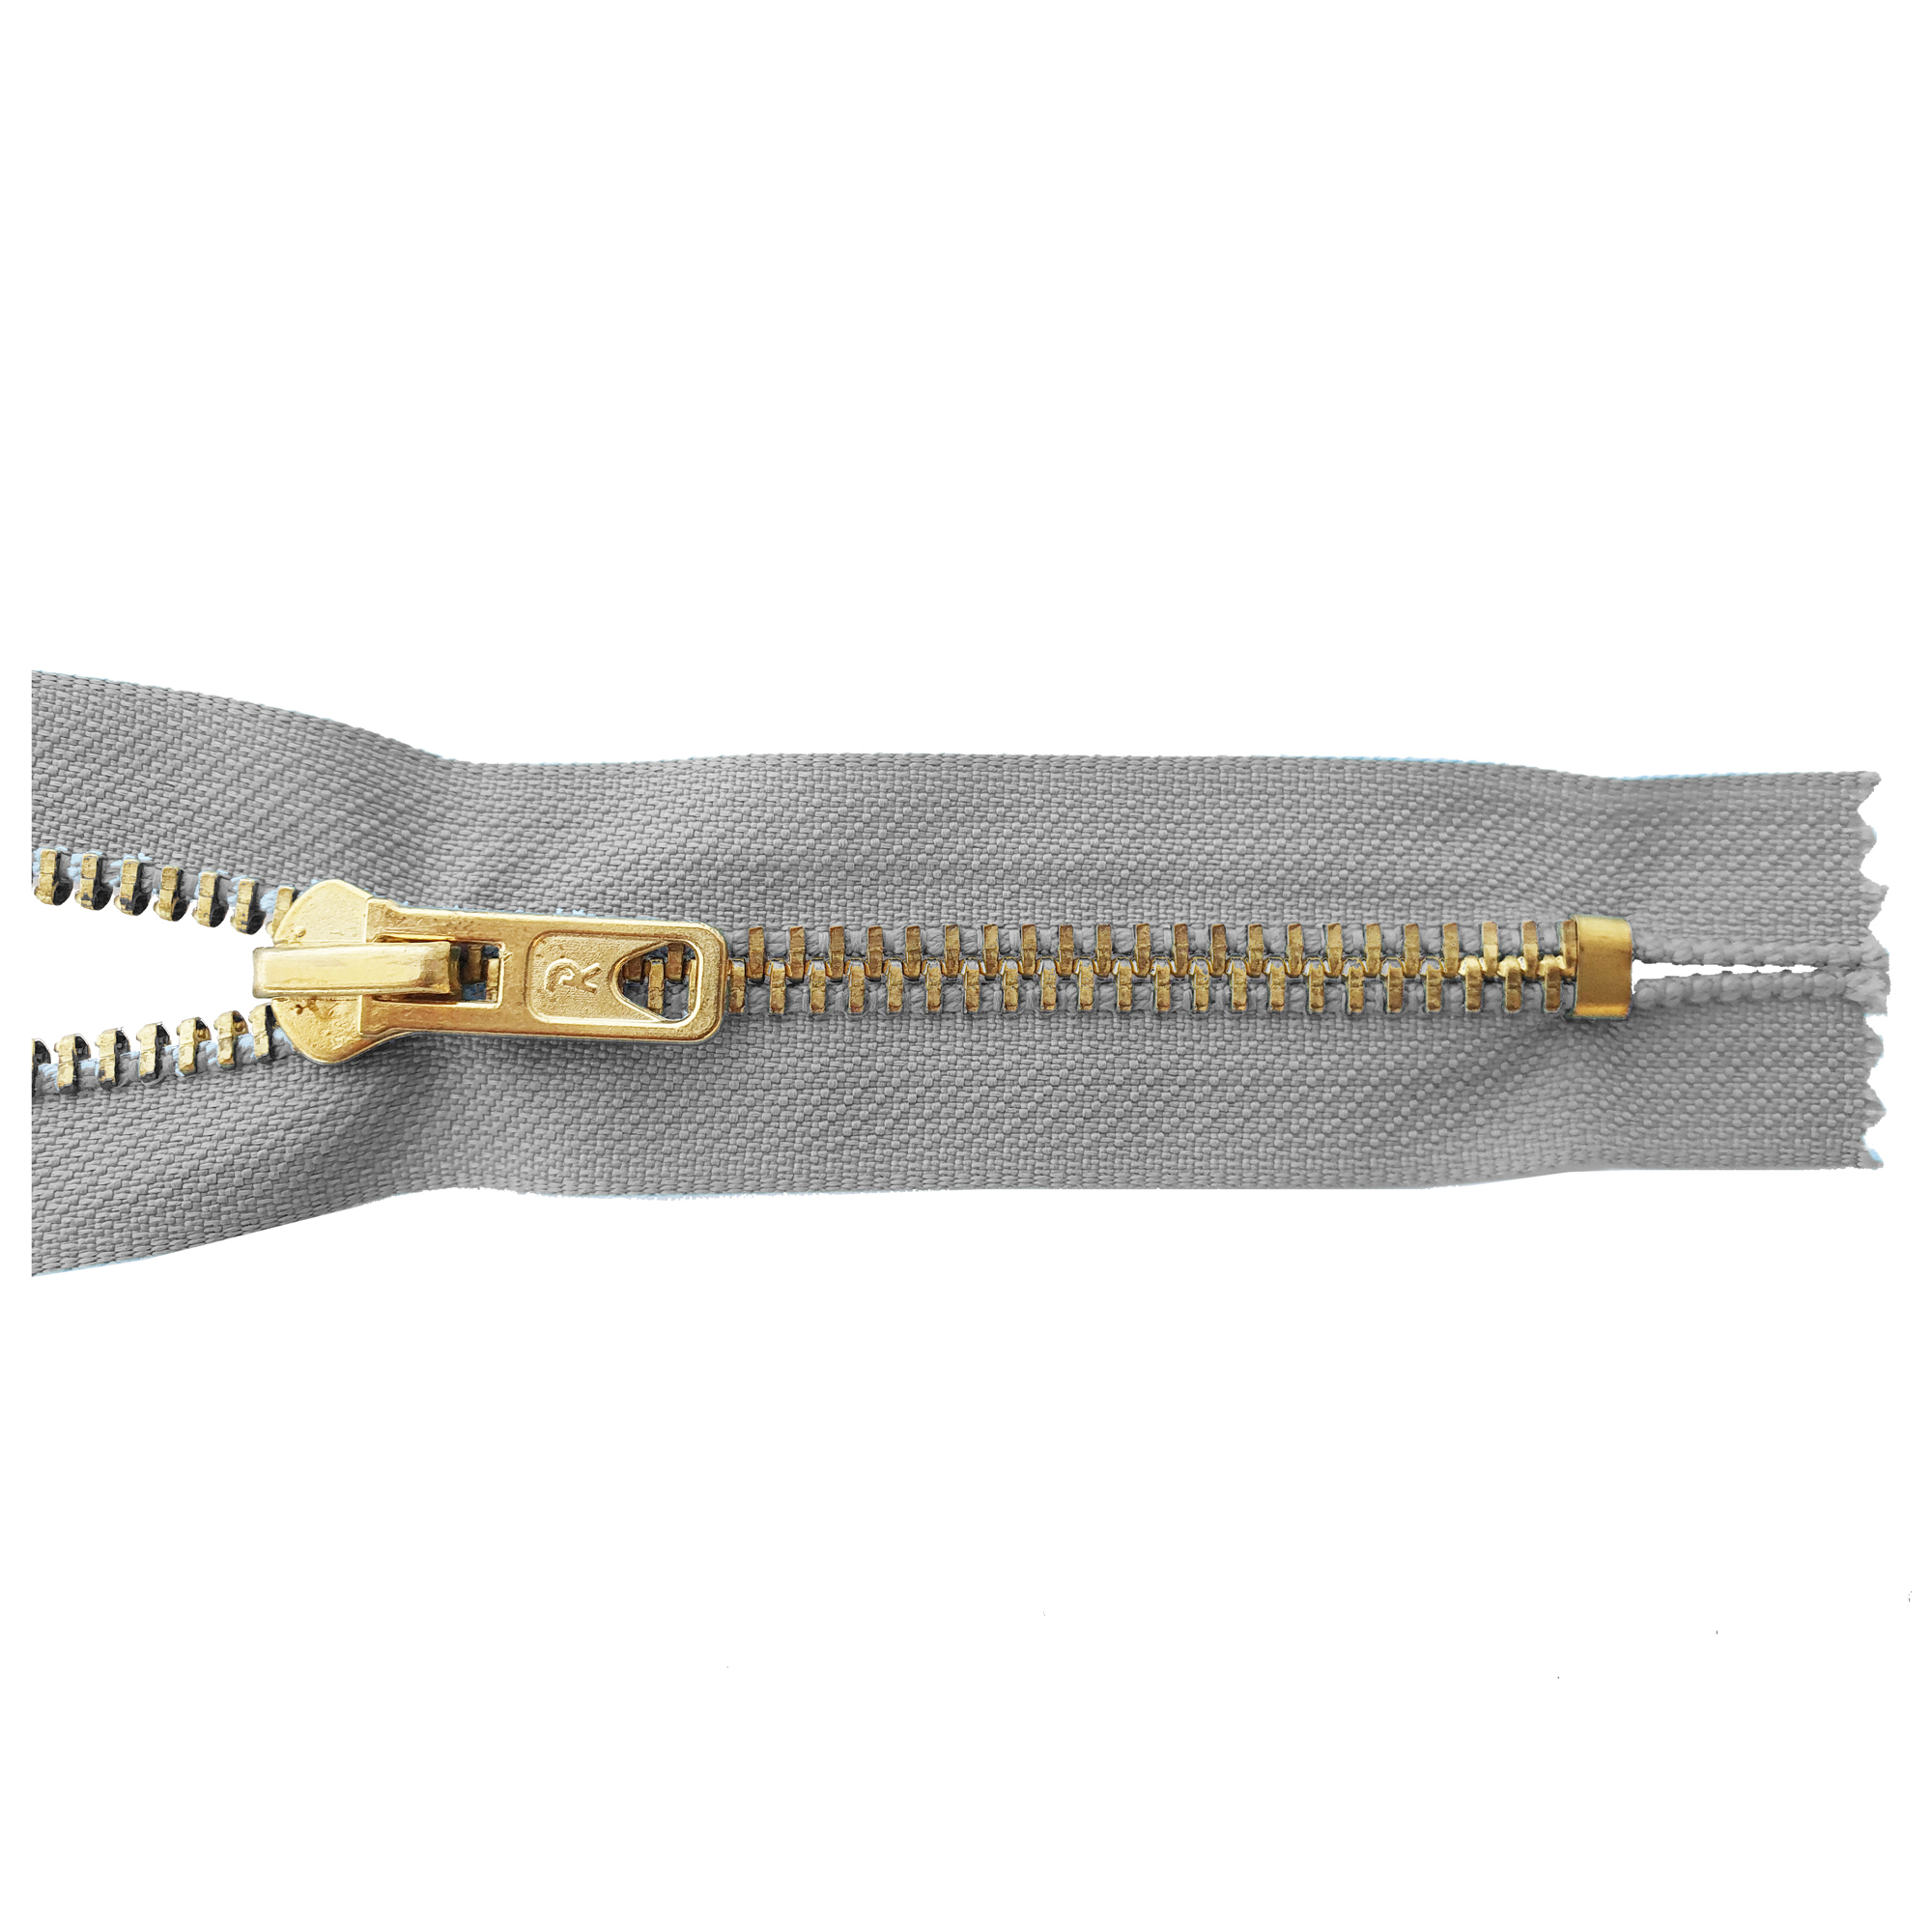 Reißverschluss 12cm, nicht teilbar, Metall goldf. breit, hellgrau, hochwertiger Marken-Reißverschluss von Rubi/Barcelona